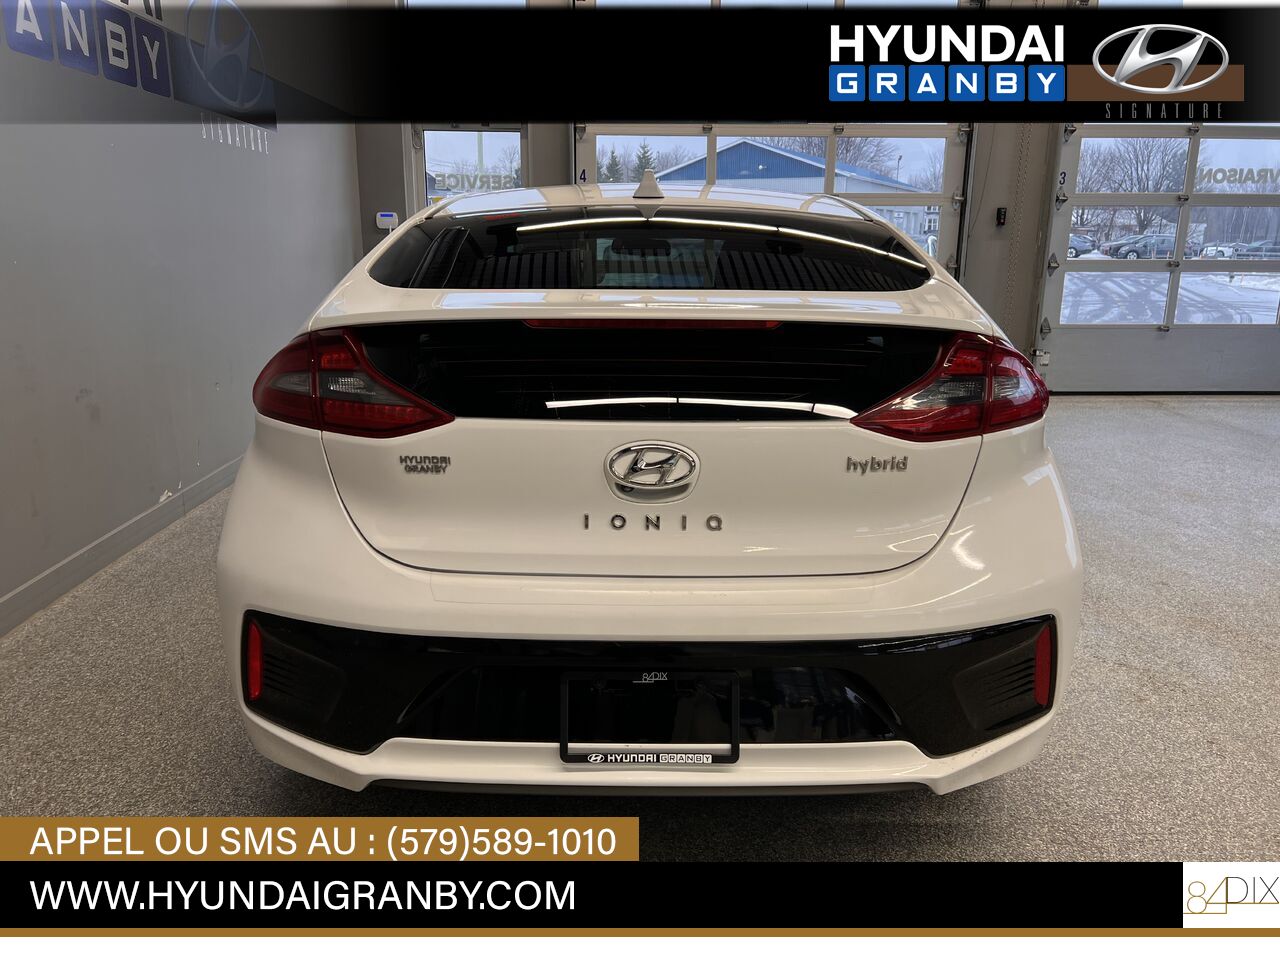 Hyundai Ioniq hybride 2017 Granby - photo #5